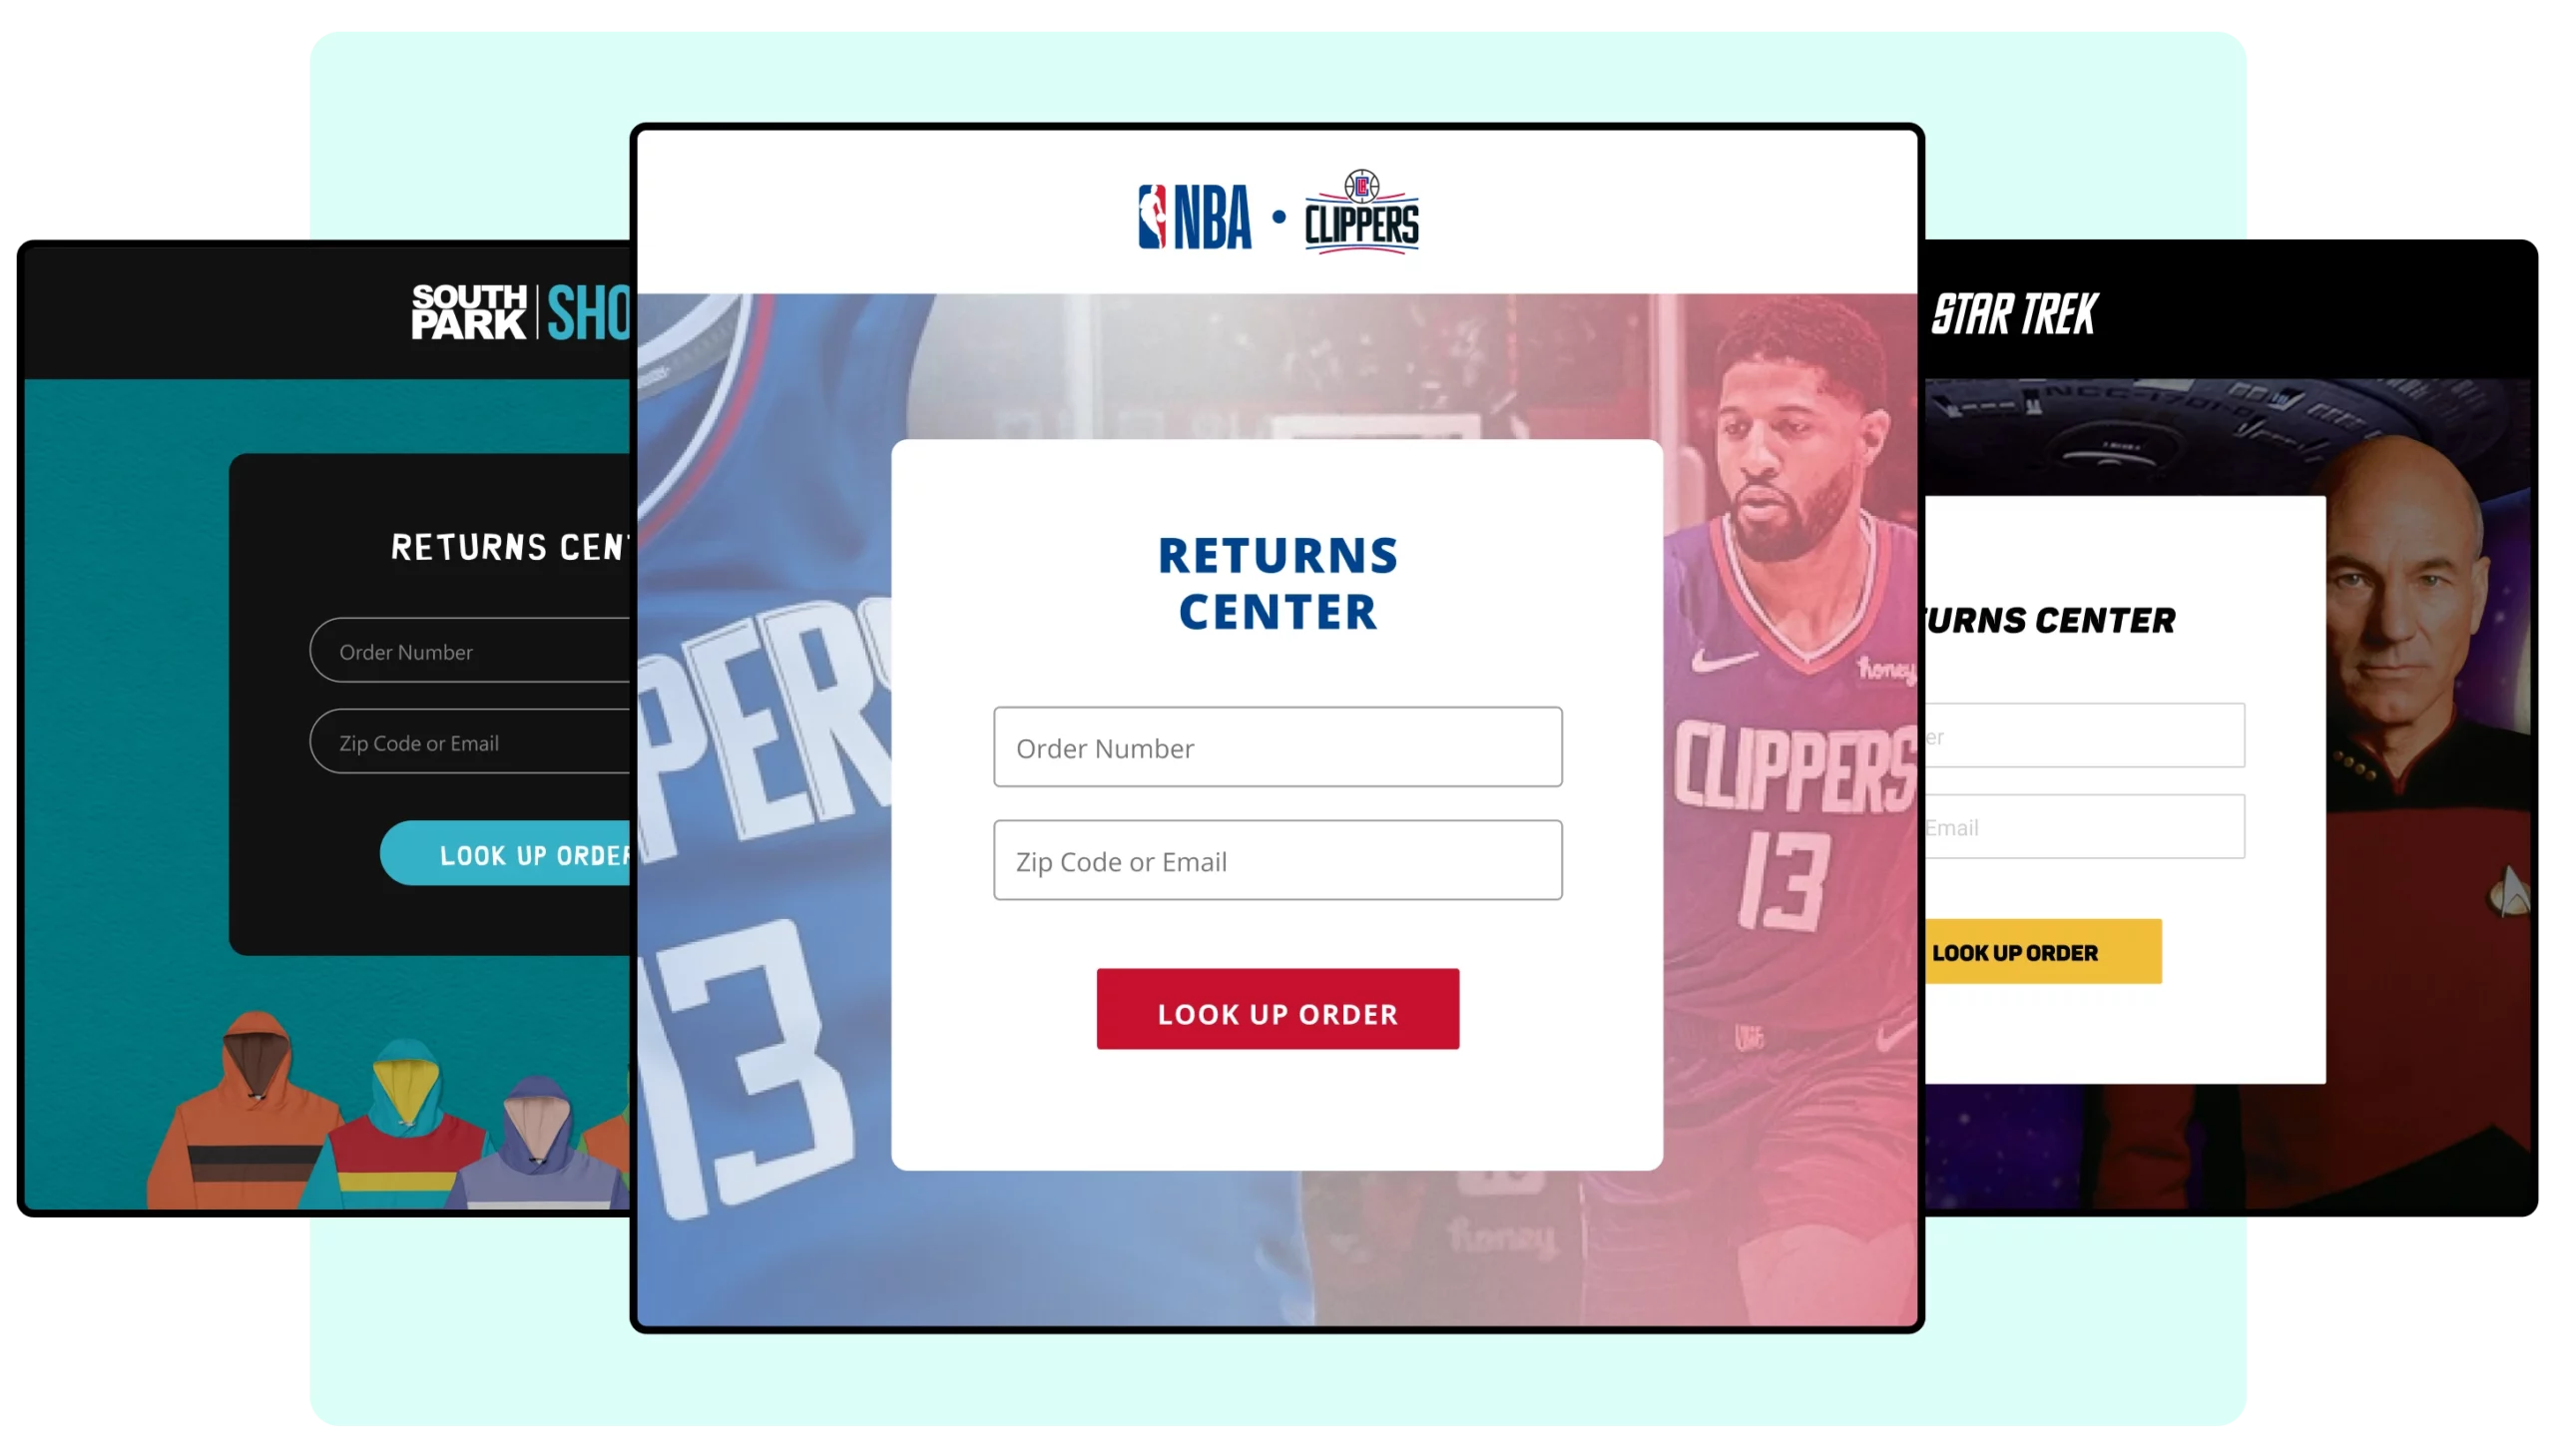 WeSupply branded returns center - NBA SOUTH PARK STAR TREK - green